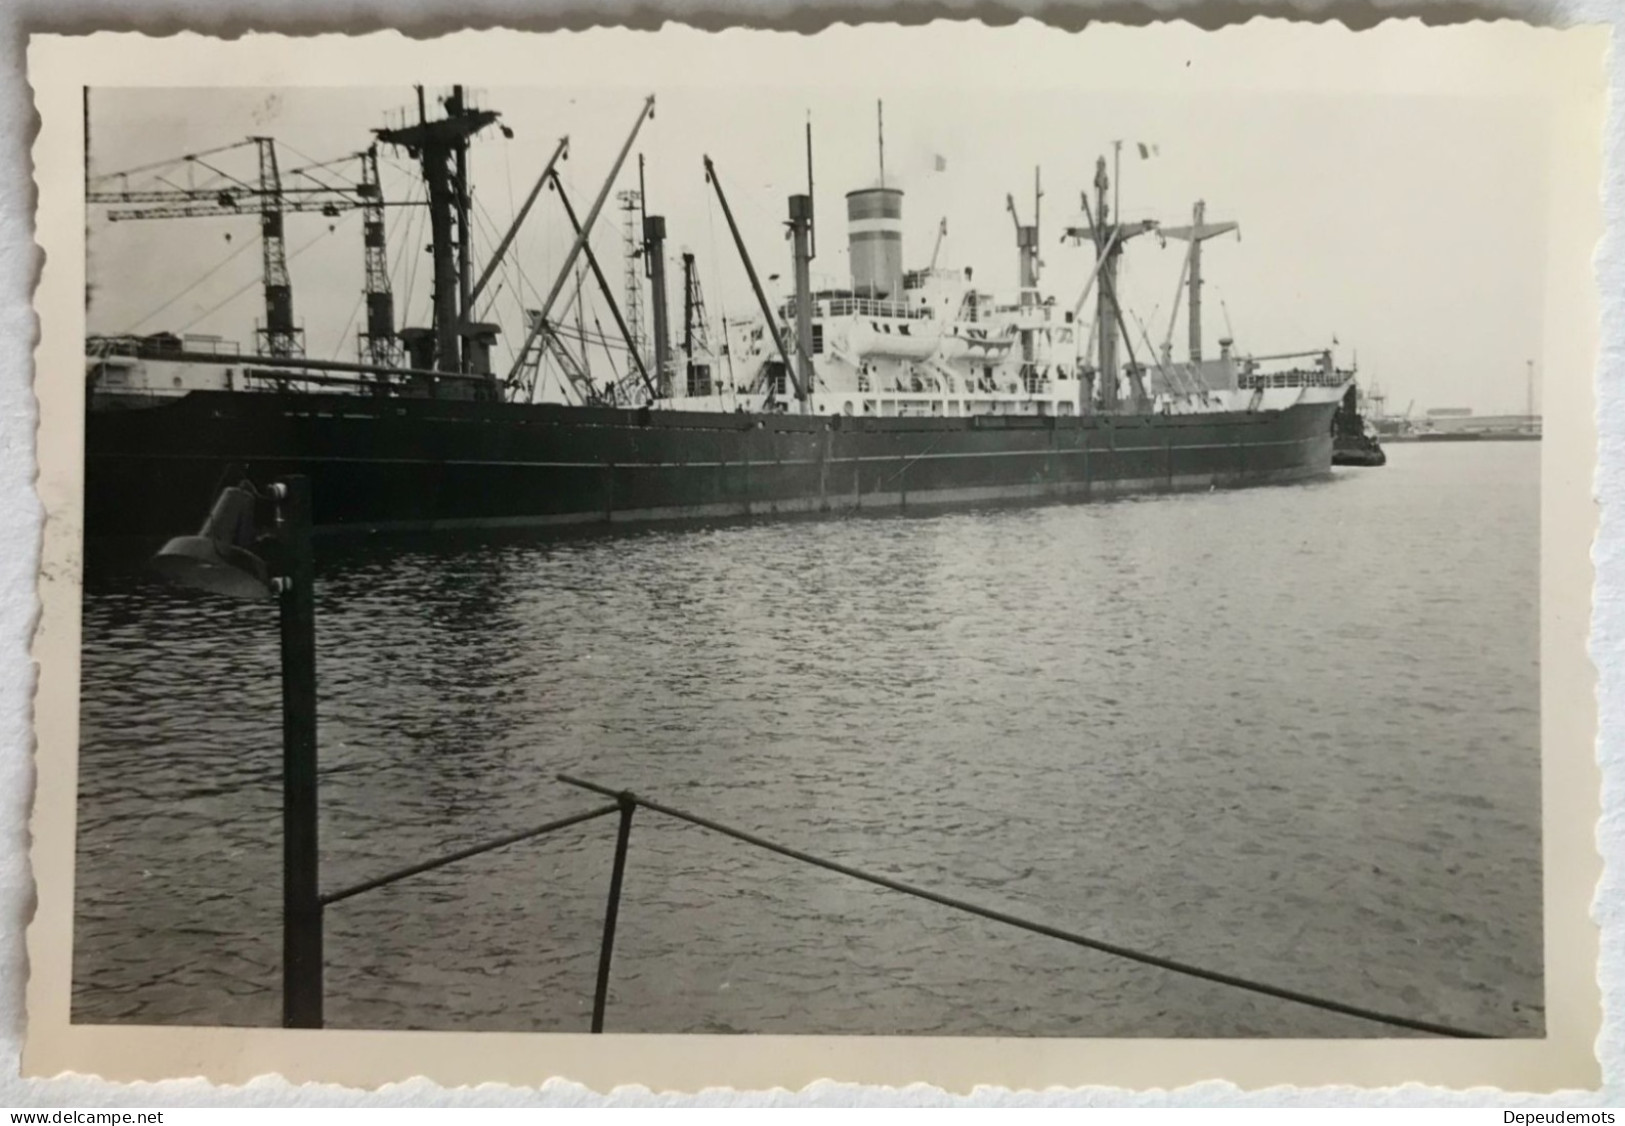 Photo Ancienne - Snapshot - Bateau Cargo Tanker - Port - Chantier Naval - Bateaux